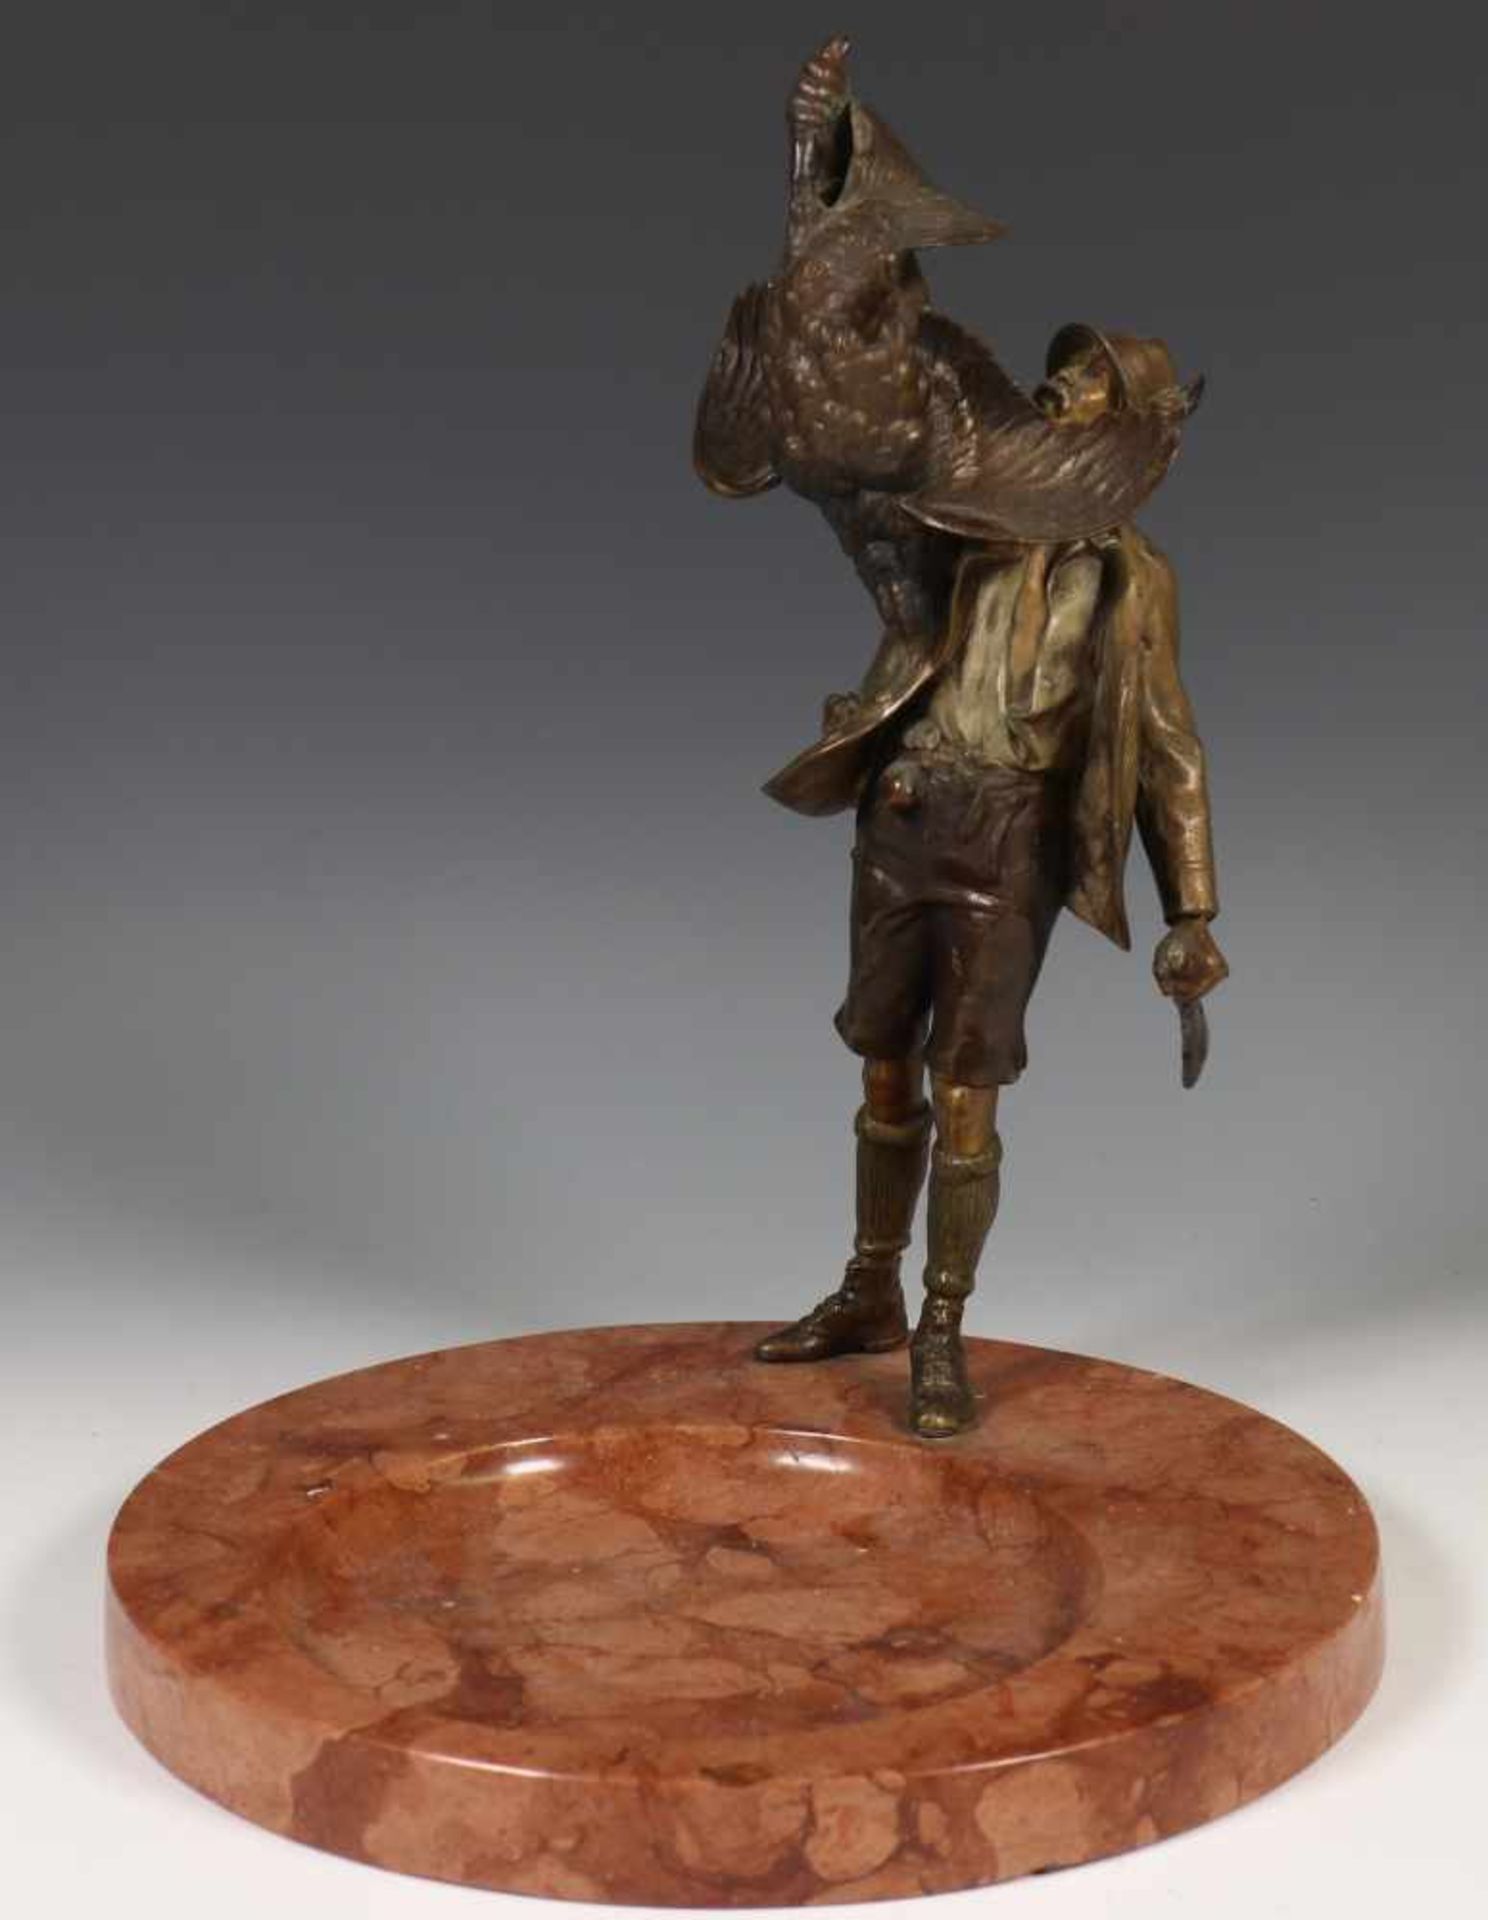 Rood marmeren vide-poche,met bronzen sculptuur van jager met geschoten wild (geweer beschadigd),